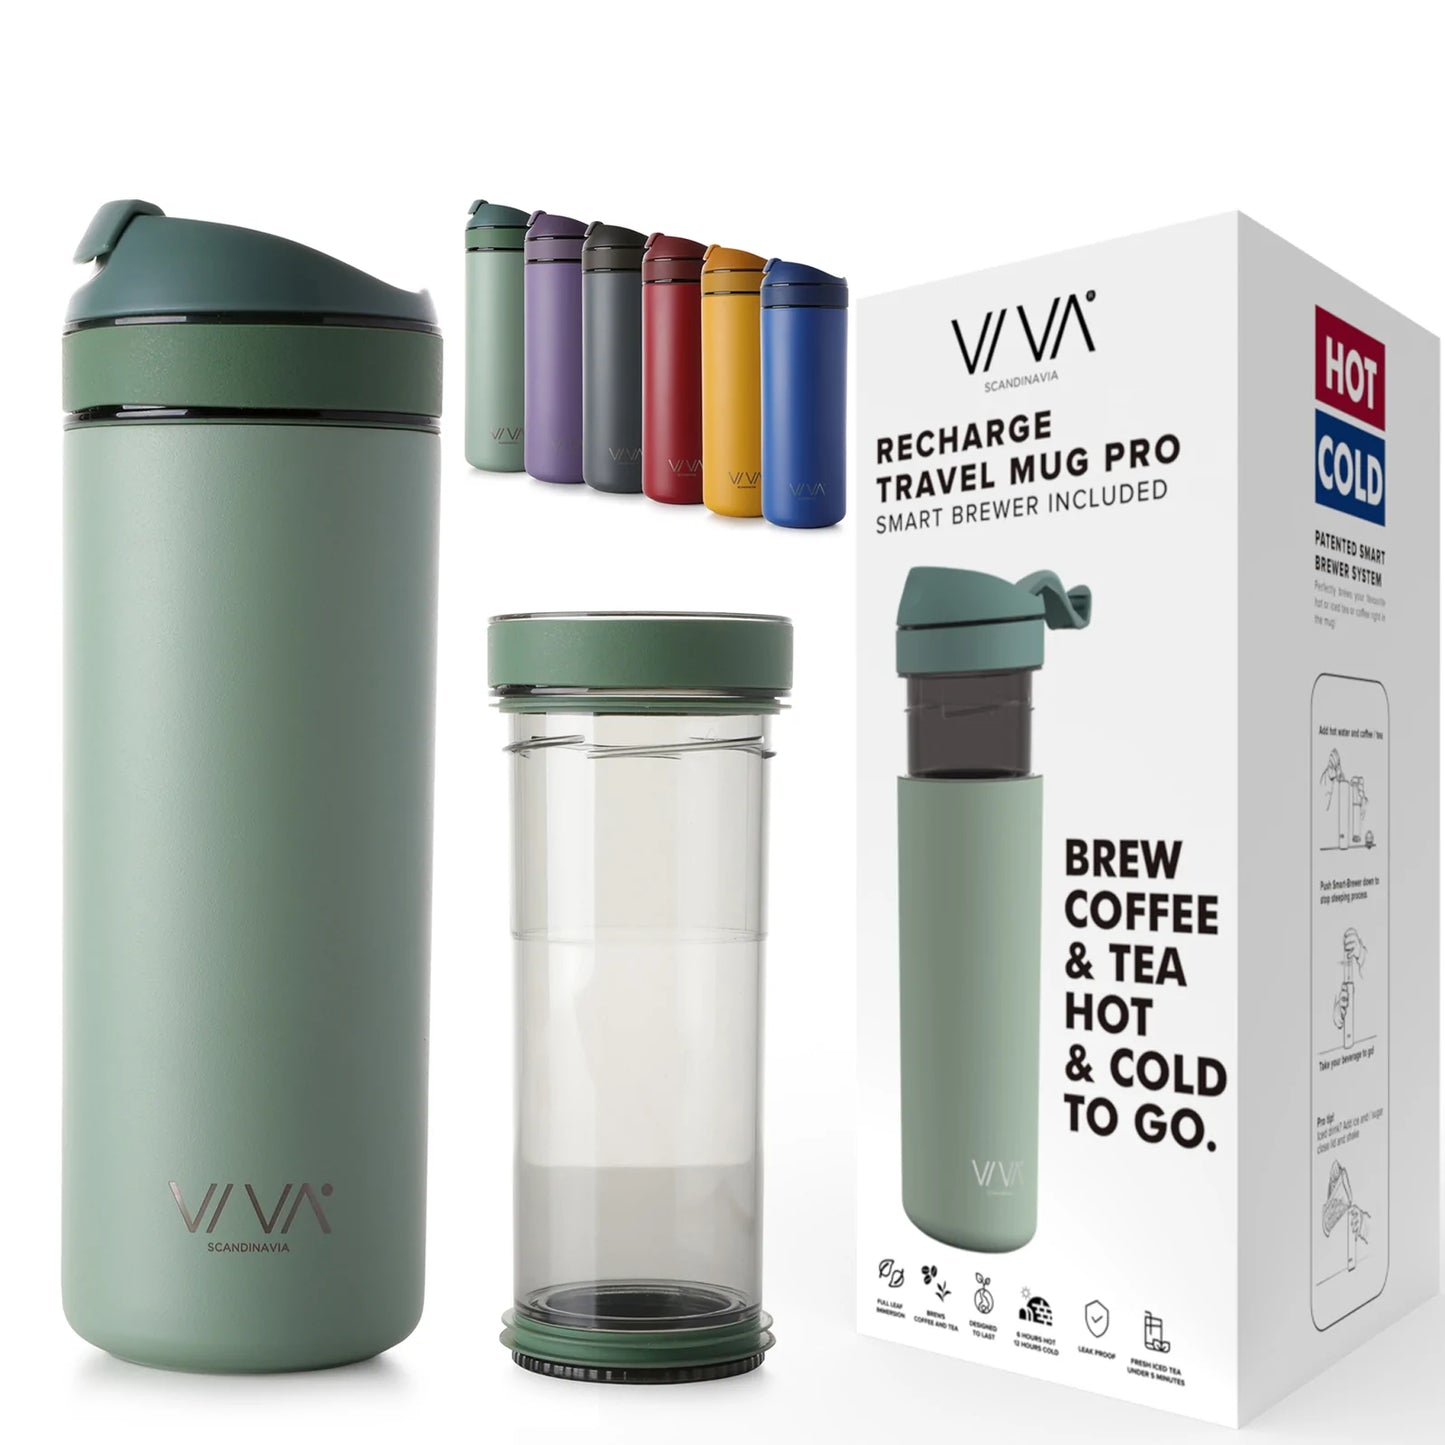 VIVA - Recharge Travel Mug (3 colours)